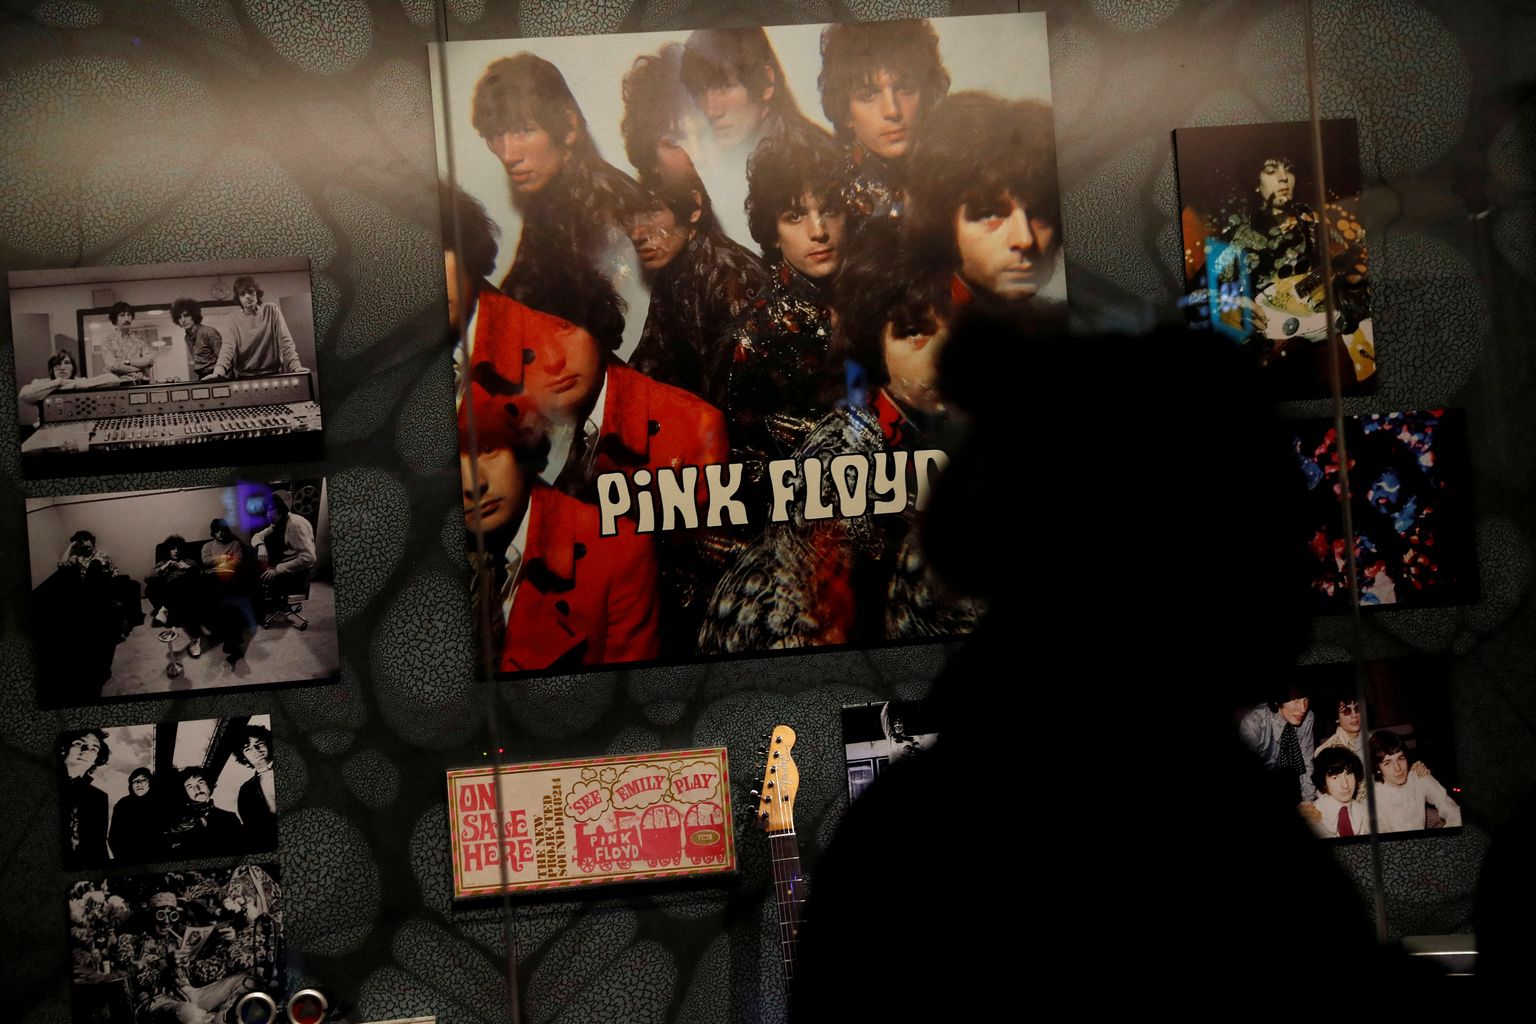 Pink Floyd müüb küll oma salvestuste õigusi, samuti õigusi kasutada oma nime, pilti ja sarnasust, kuid mitte reklaami või filmi tegemise õigusi. Teatud lugude autoriõigused, aeguvad Ühendkuningriigis aga juba paarikümne aasta pärast.